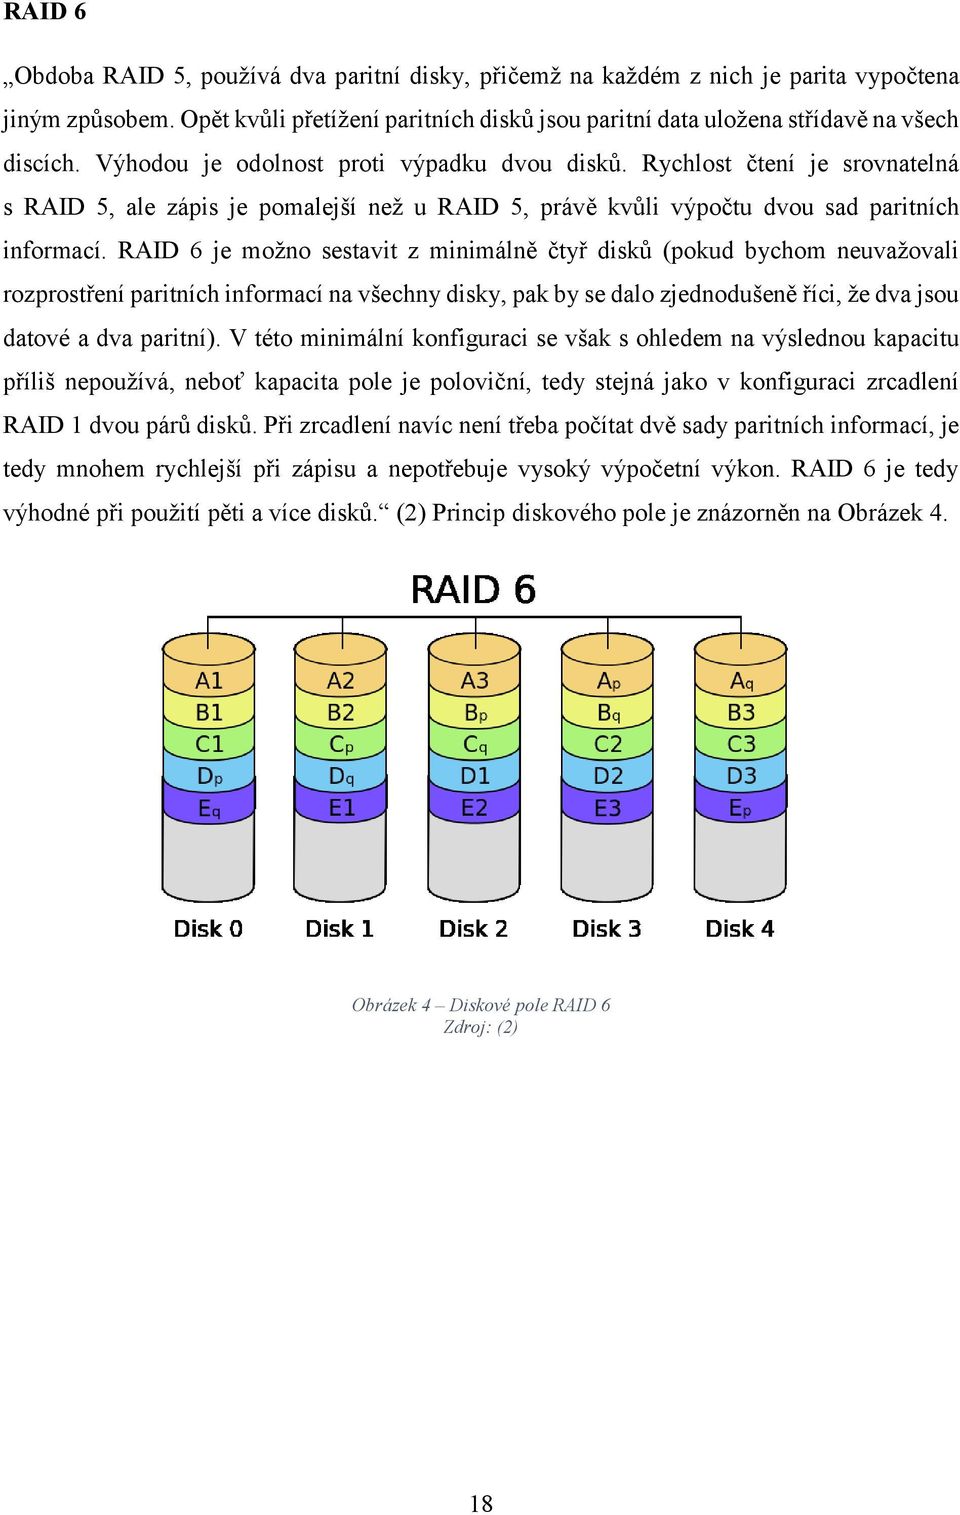 RAID 6 je možno sestavit z minimálně čtyř disků (pokud bychom neuvažovali rozprostření paritních informací na všechny disky, pak by se dalo zjednodušeně říci, že dva jsou datové a dva paritní).